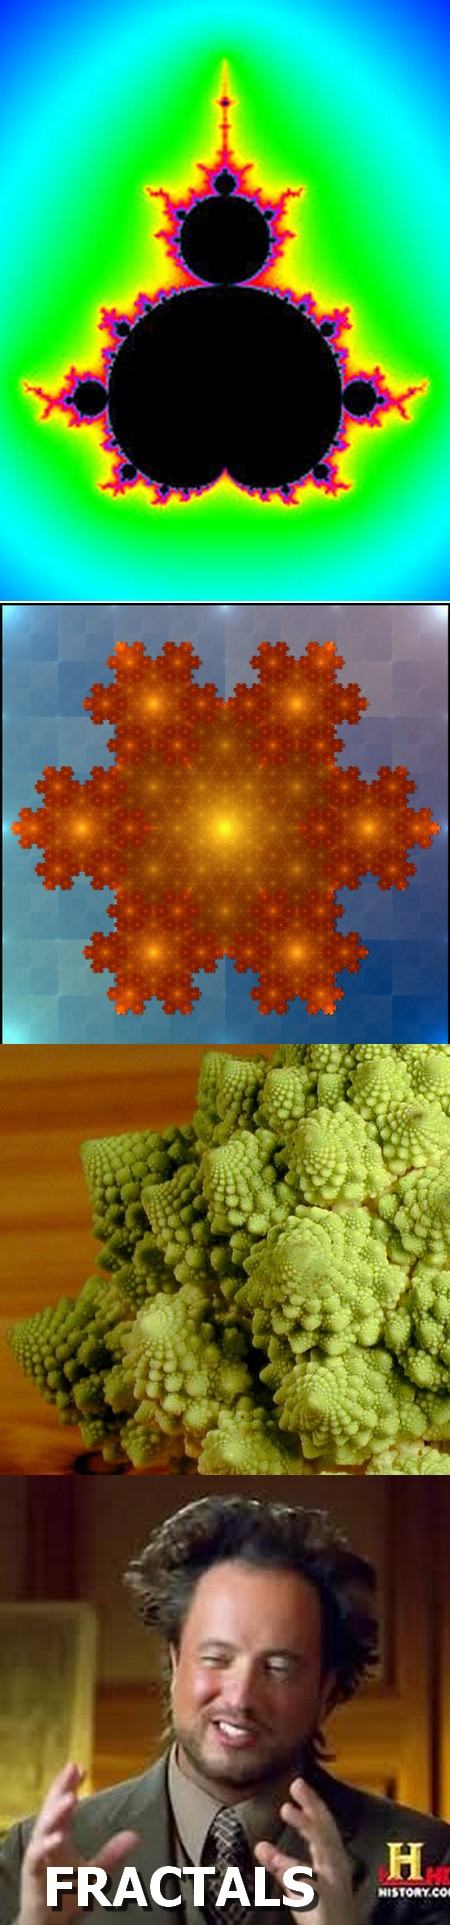 Obrázek fractals guy